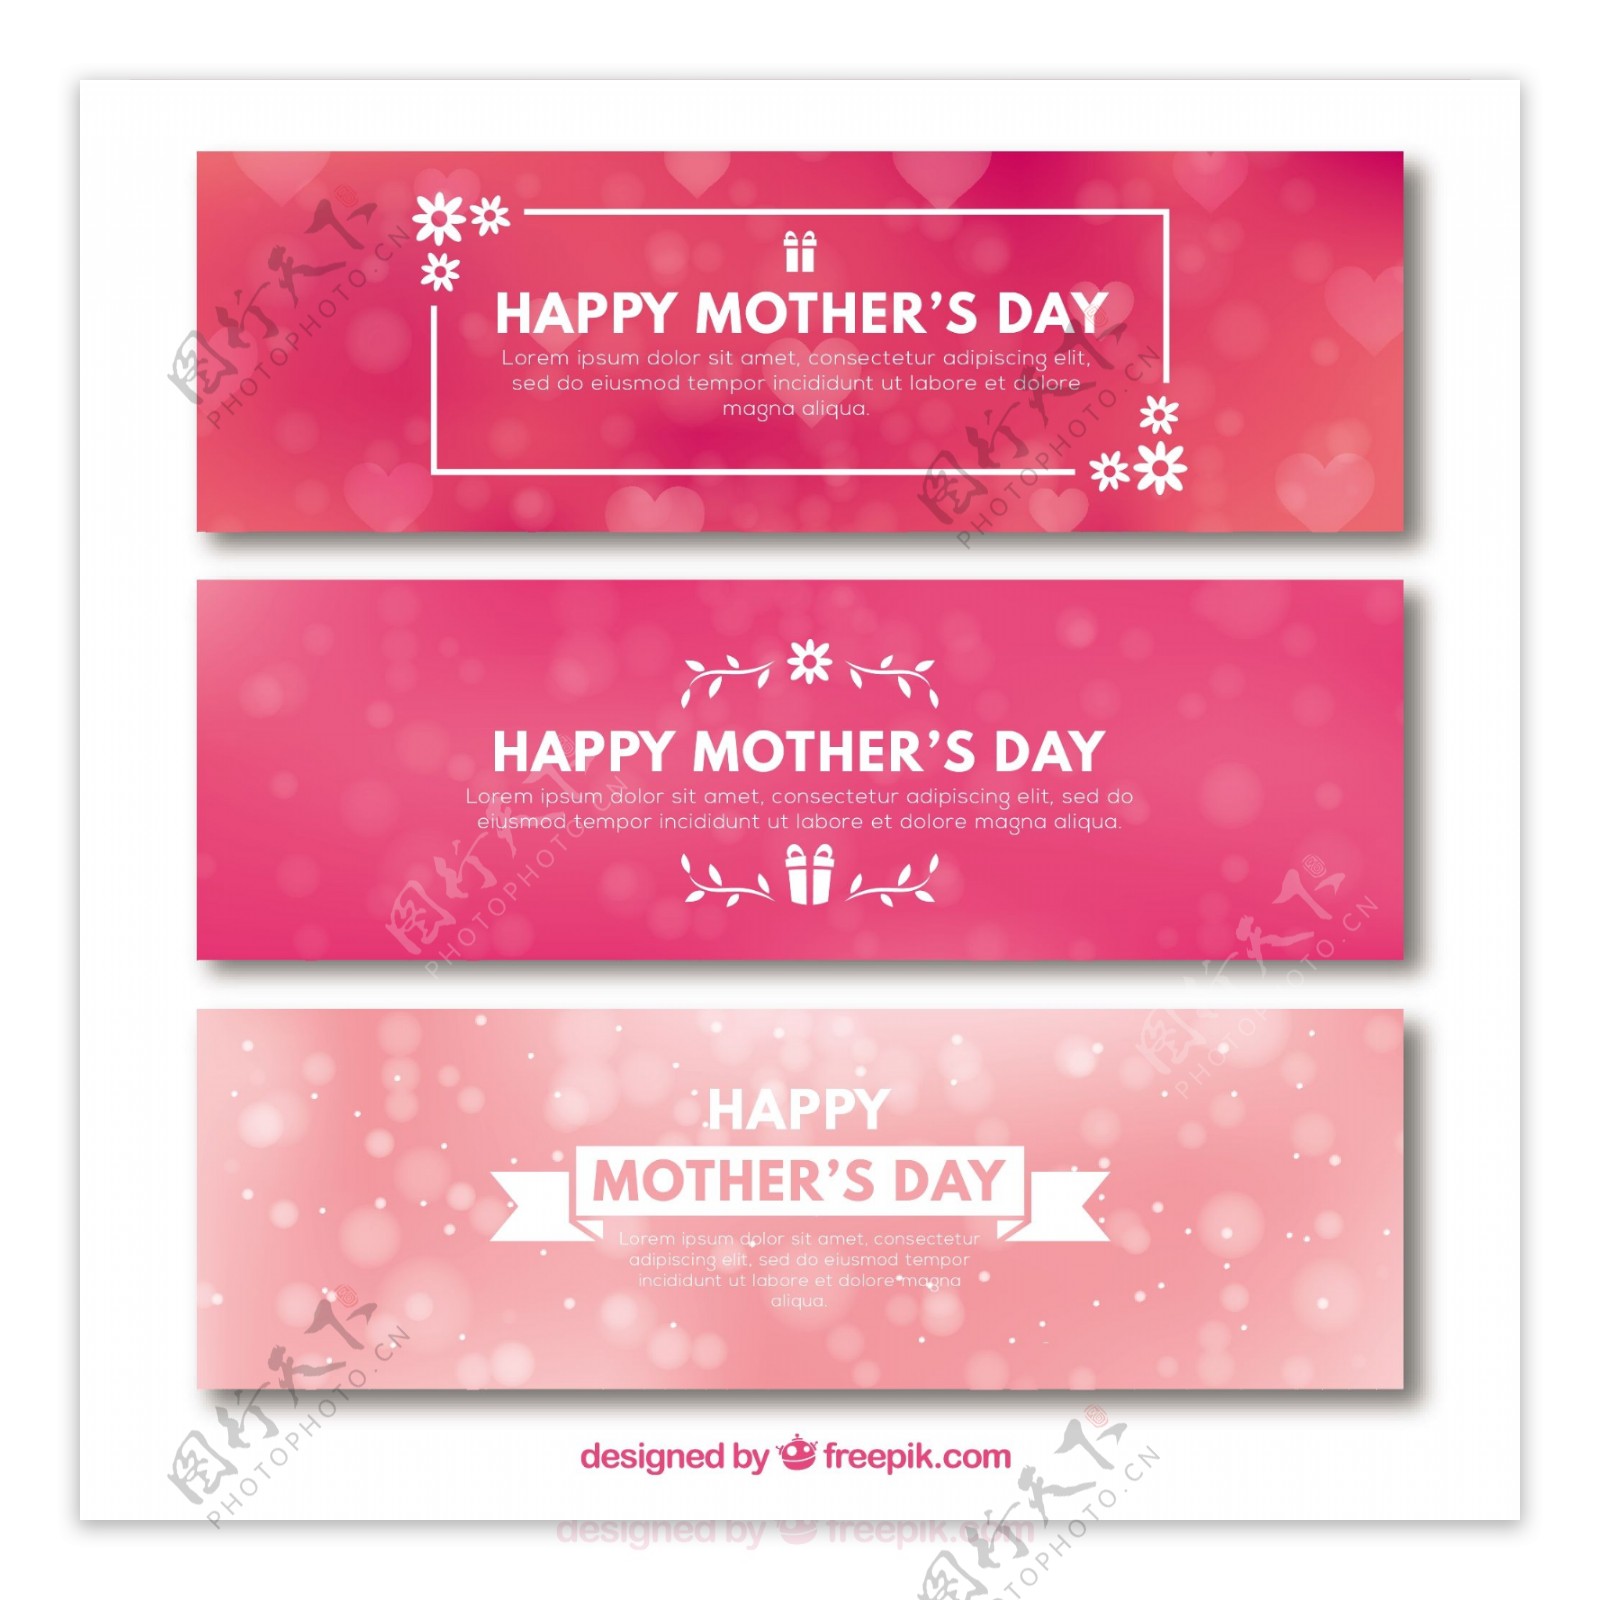 三个粉红模糊背景母亲节广告模板素材